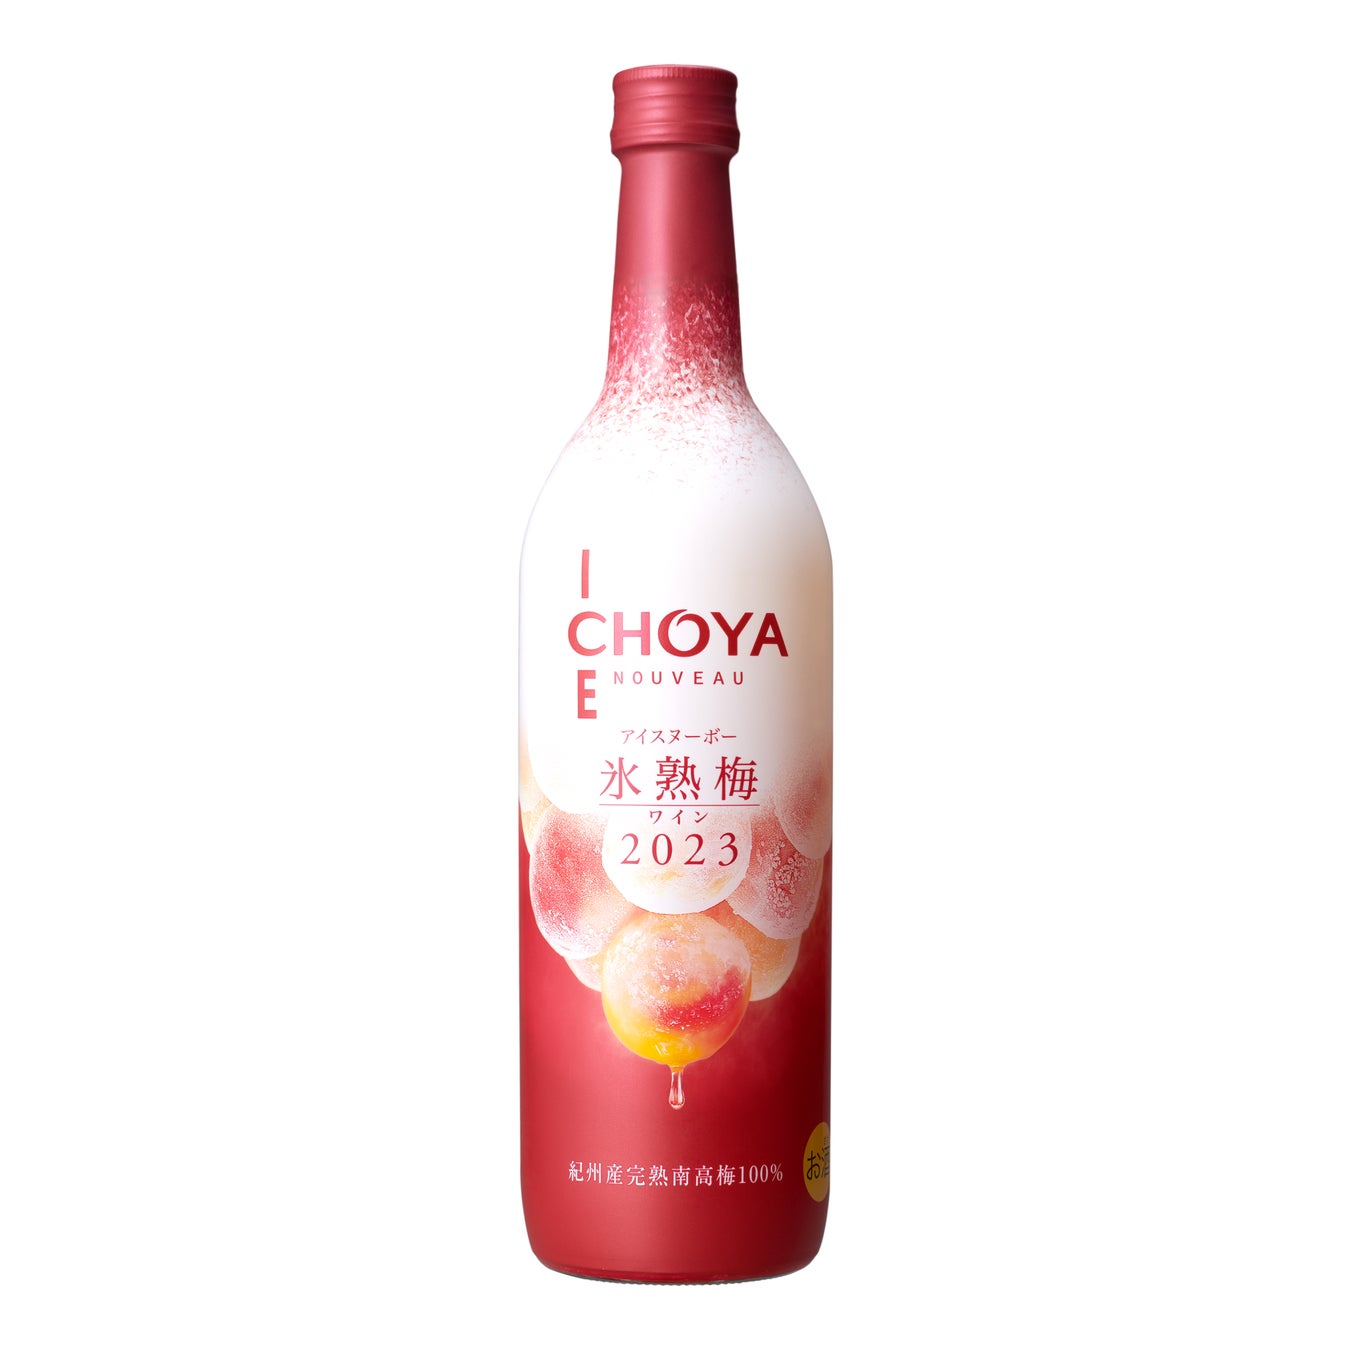 2023年収穫の梅だけで造ったプレミアムな梅ワイン「CHOYA ICE NOUVEAU 氷熟梅ワイン2023」のサブ画像5